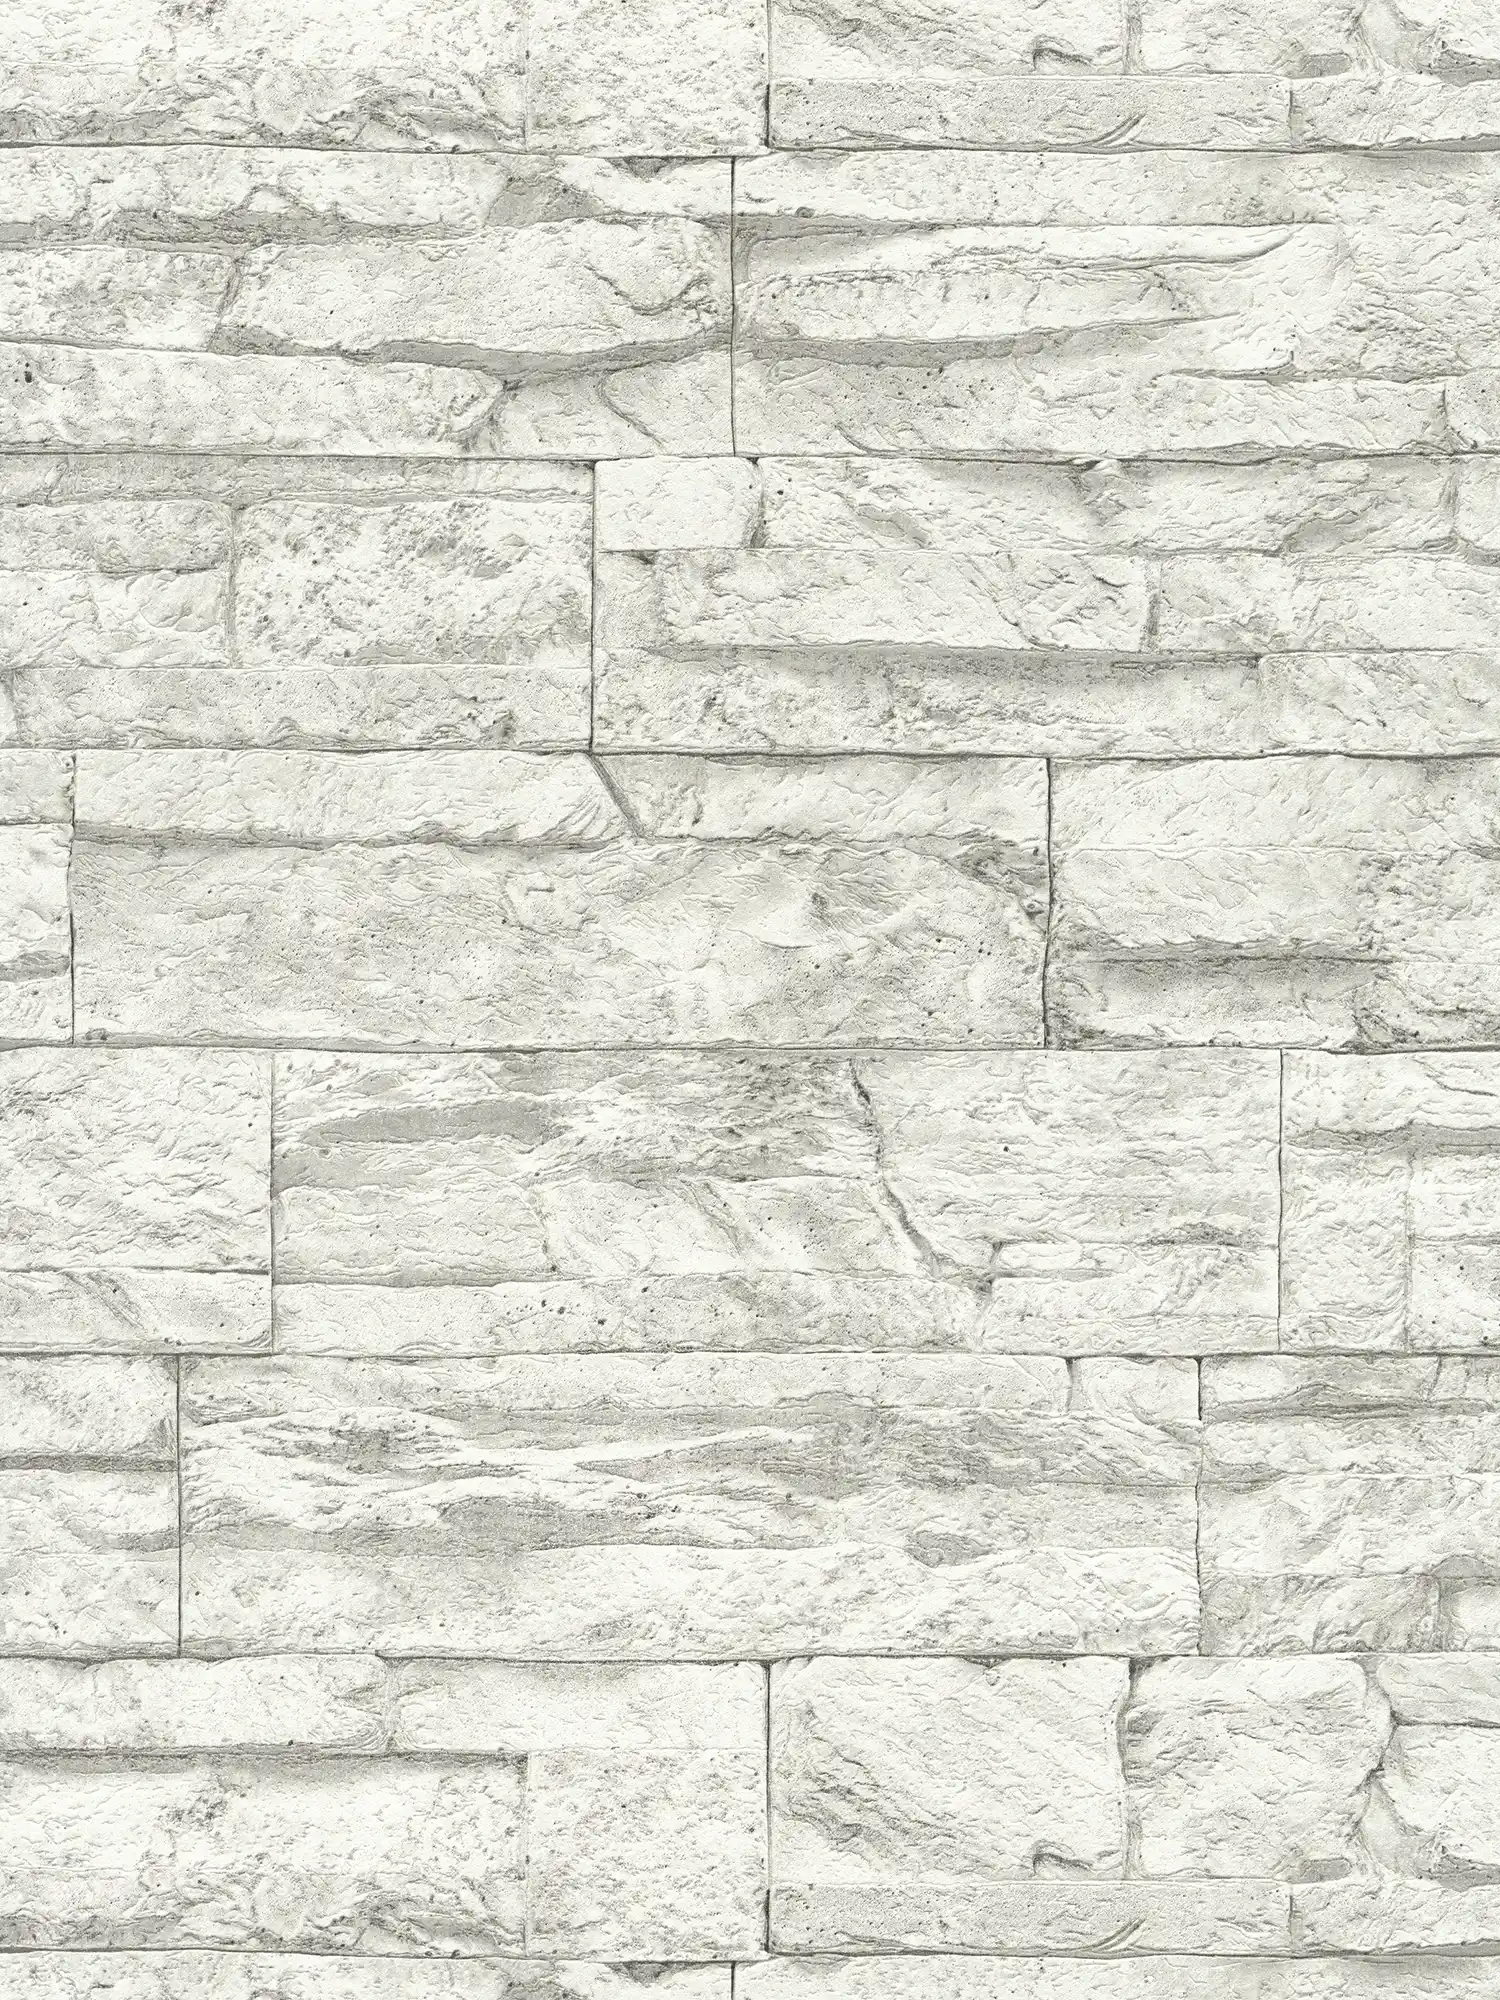 Tapete mit hellem Mauerwerk aus Natursteinen – Weiß, Grau
